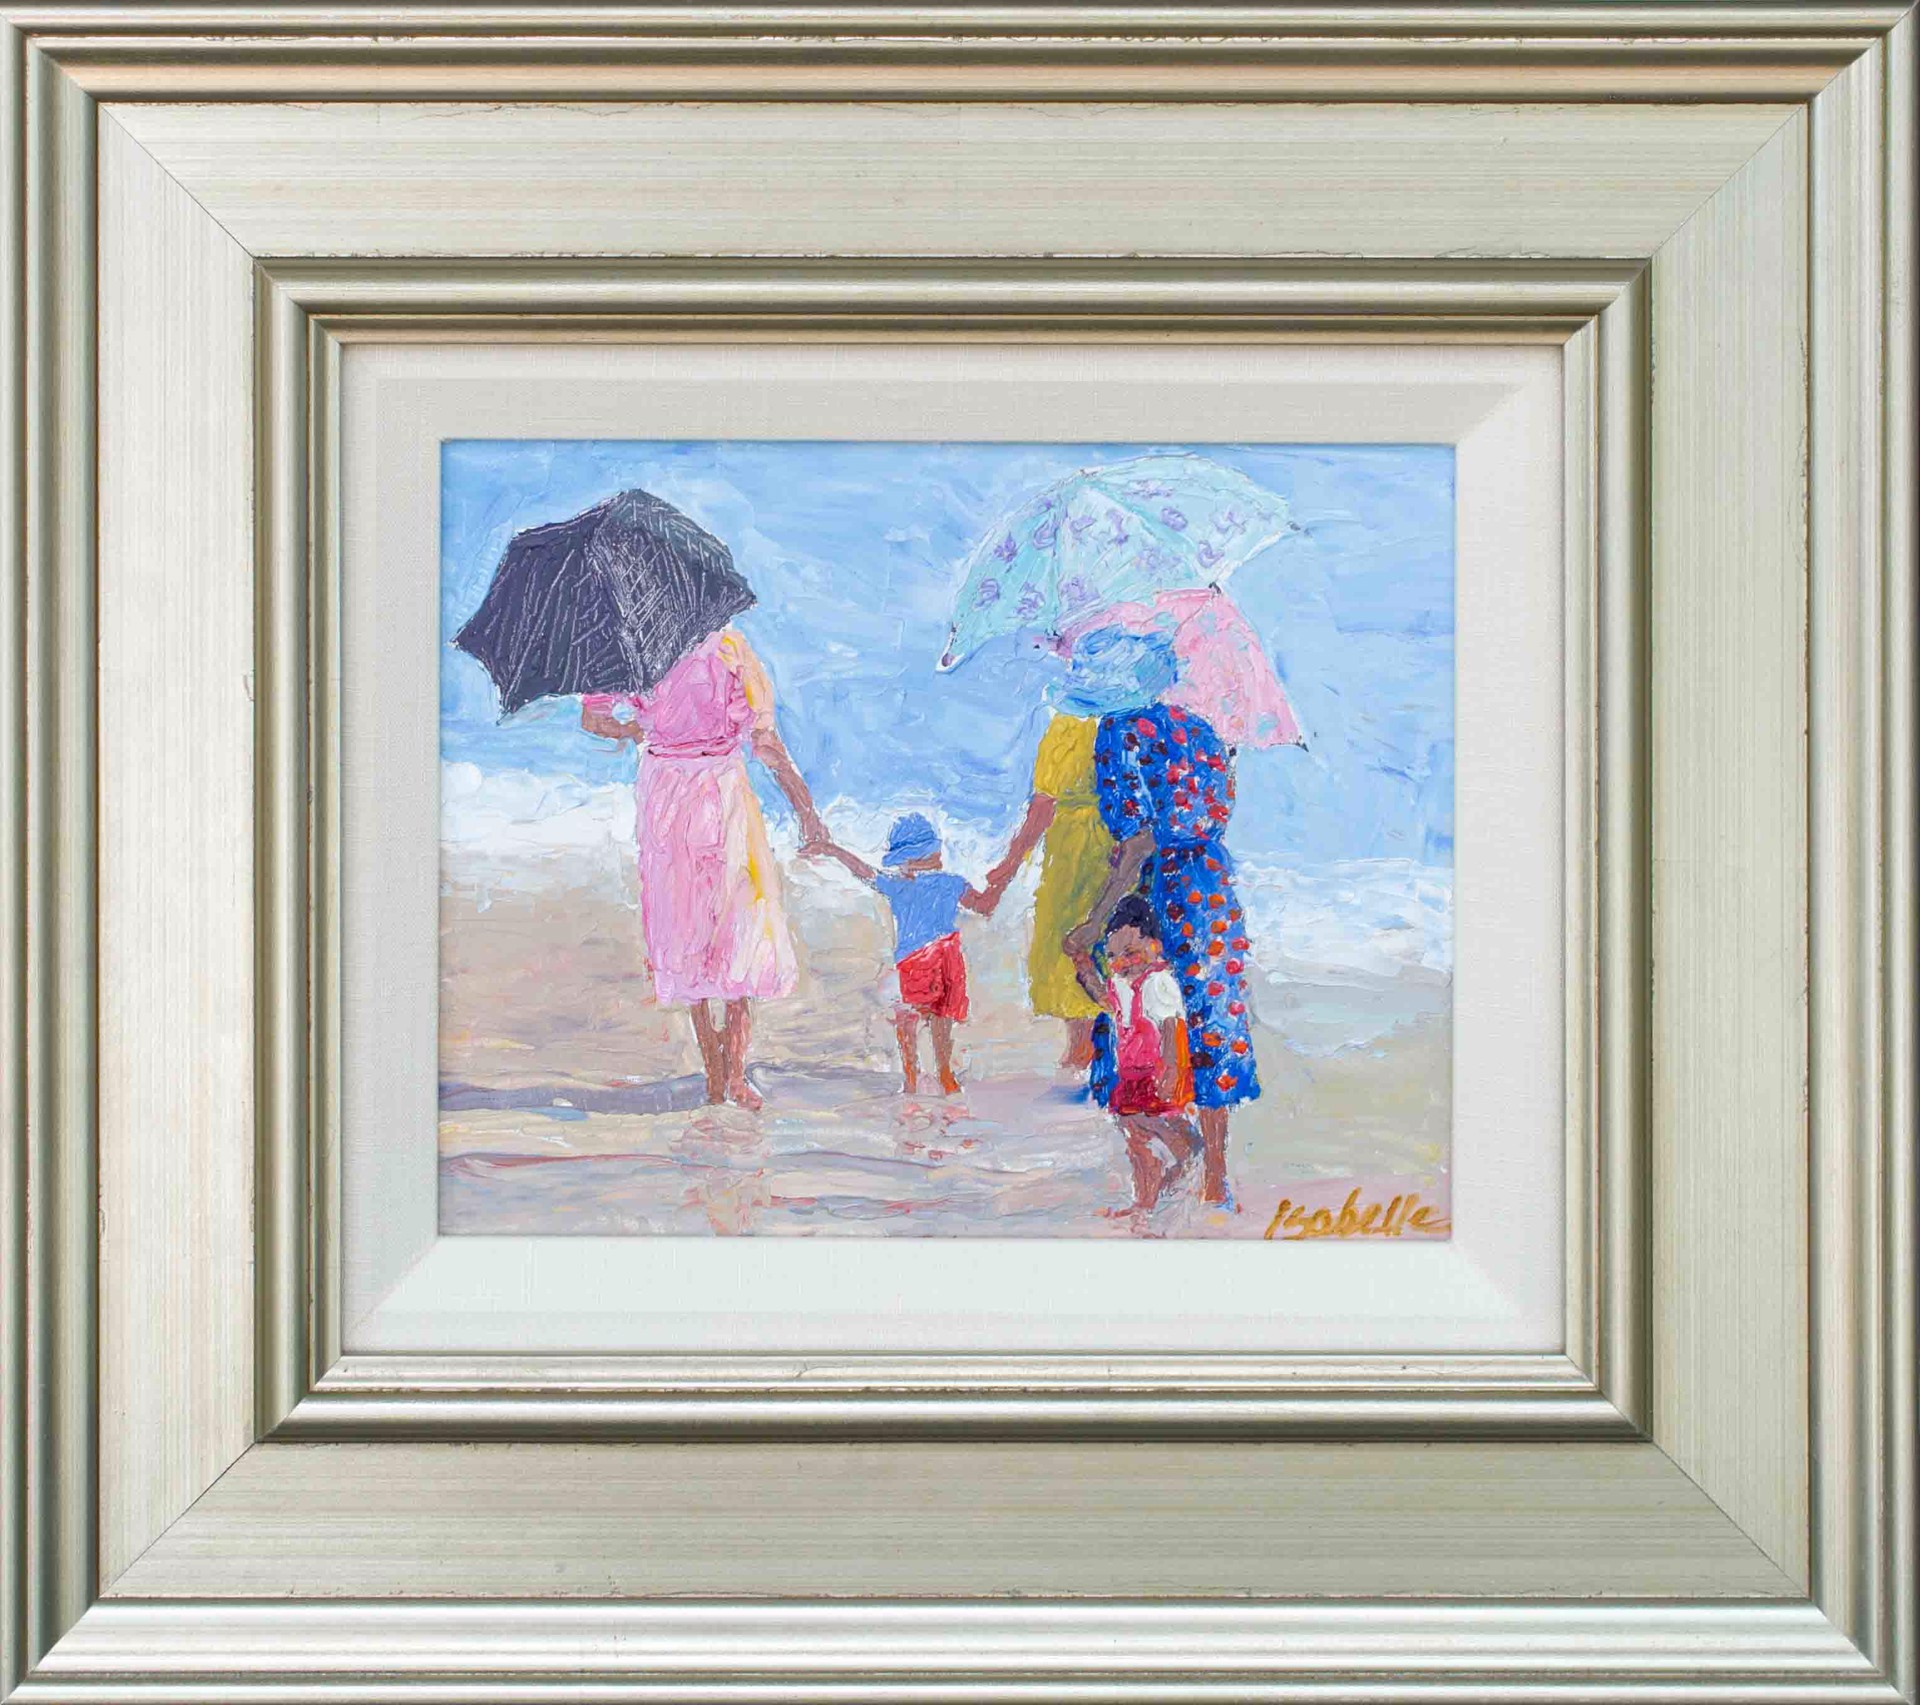 Beach Umbrellas by Isabelle Dayton